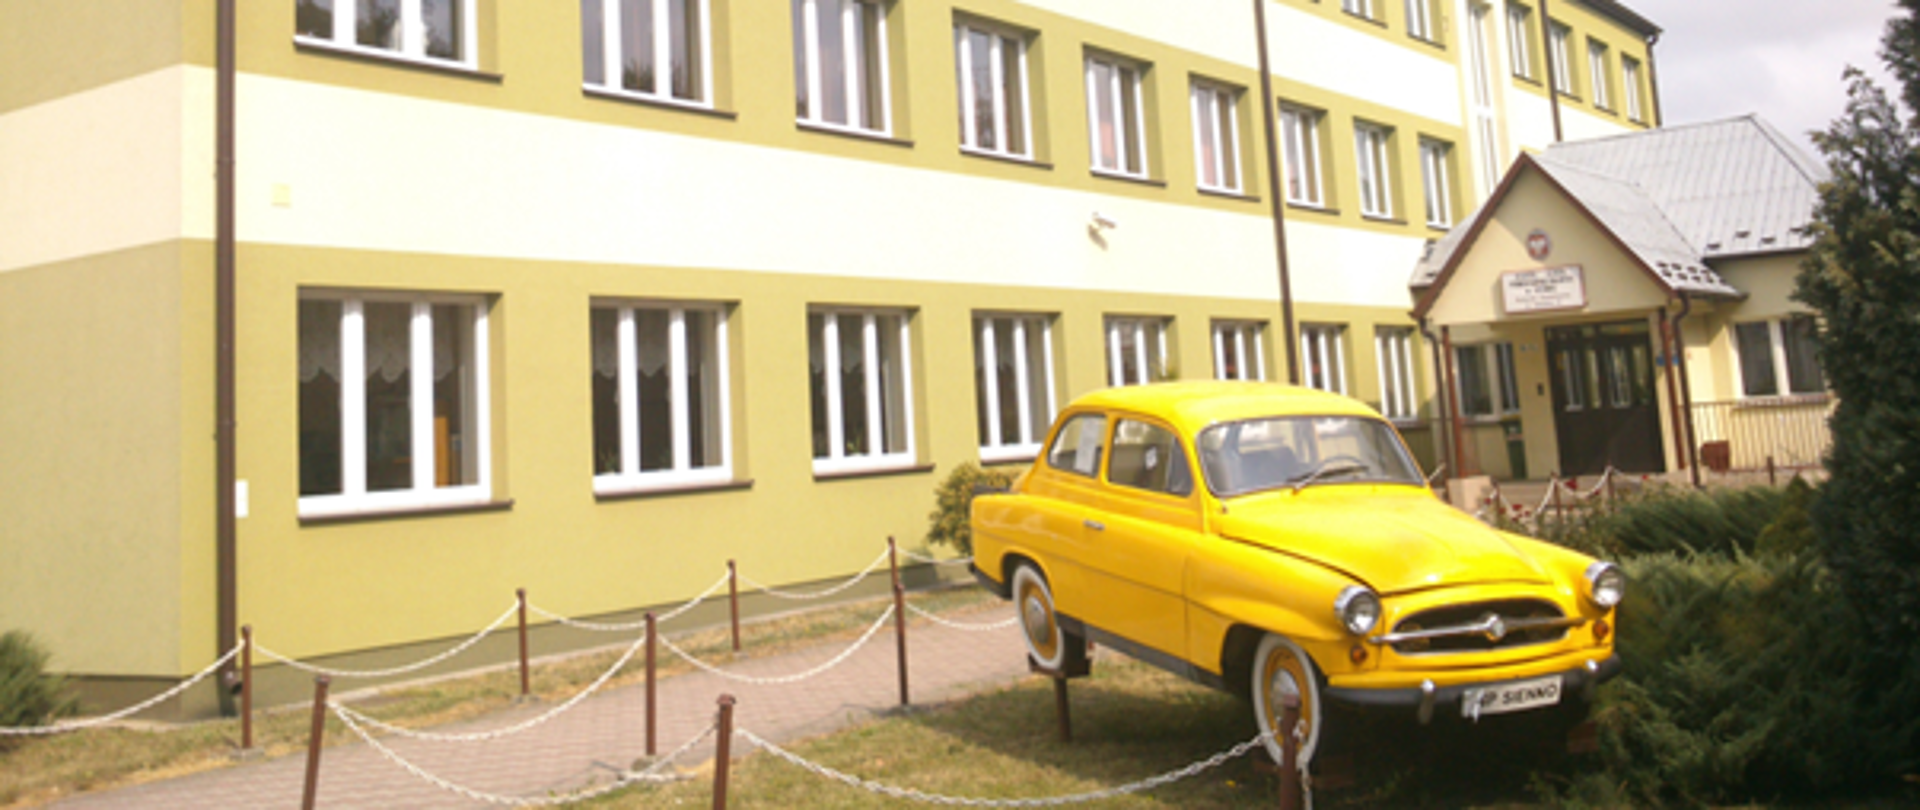 Budynek Zespołu Szkół Technicznych w Siennie. Przed budynkiem stoi żółty samochód.